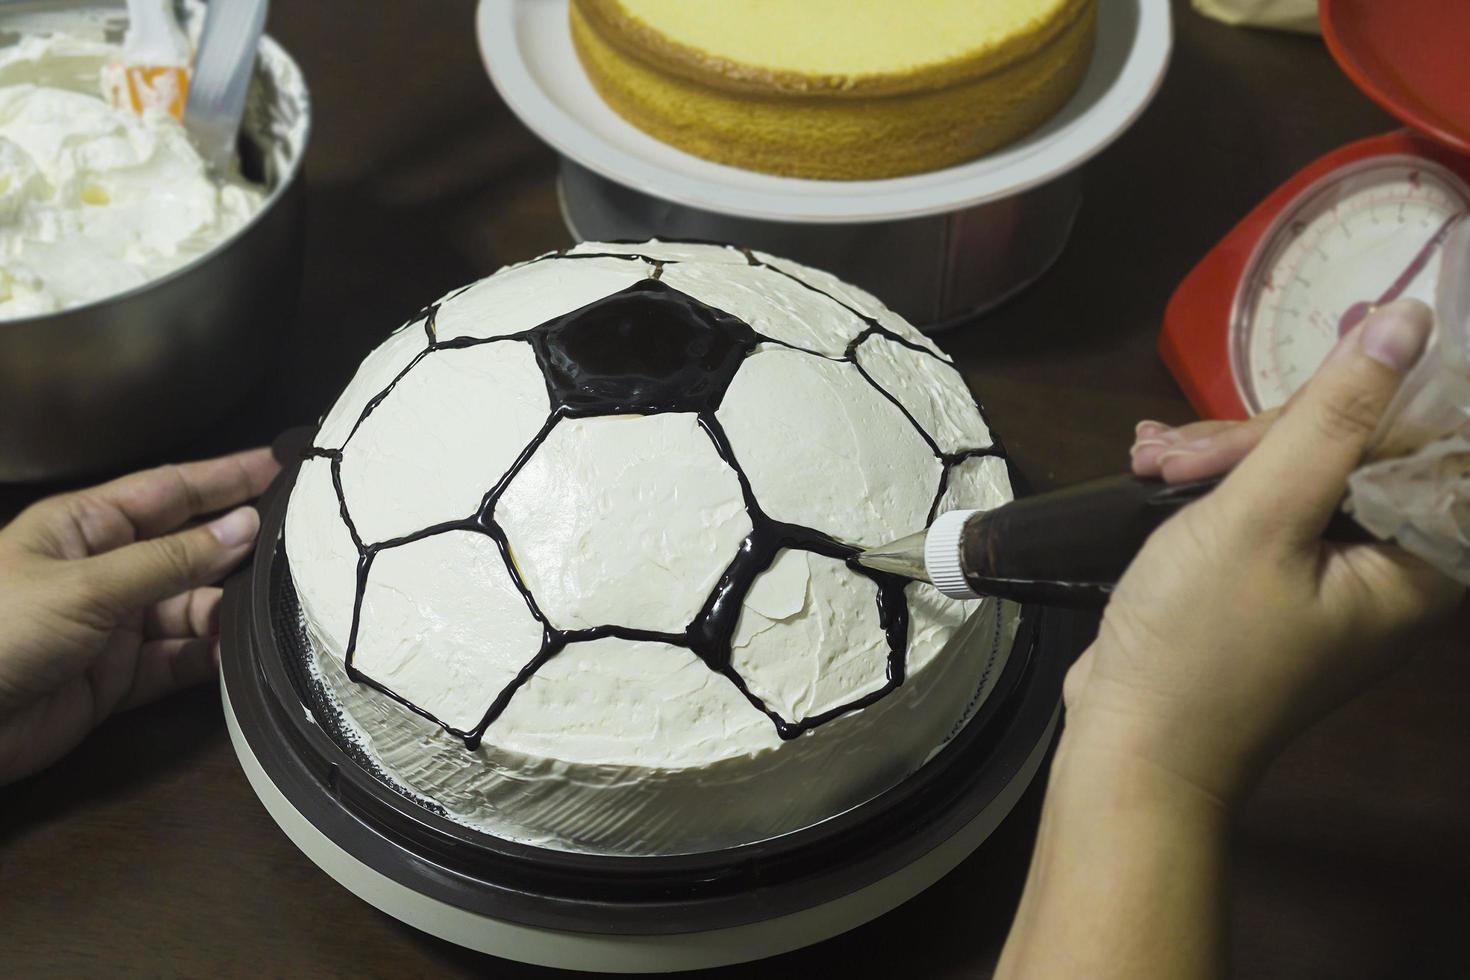 dam gör tårta, fotboll mönster dekoration foto